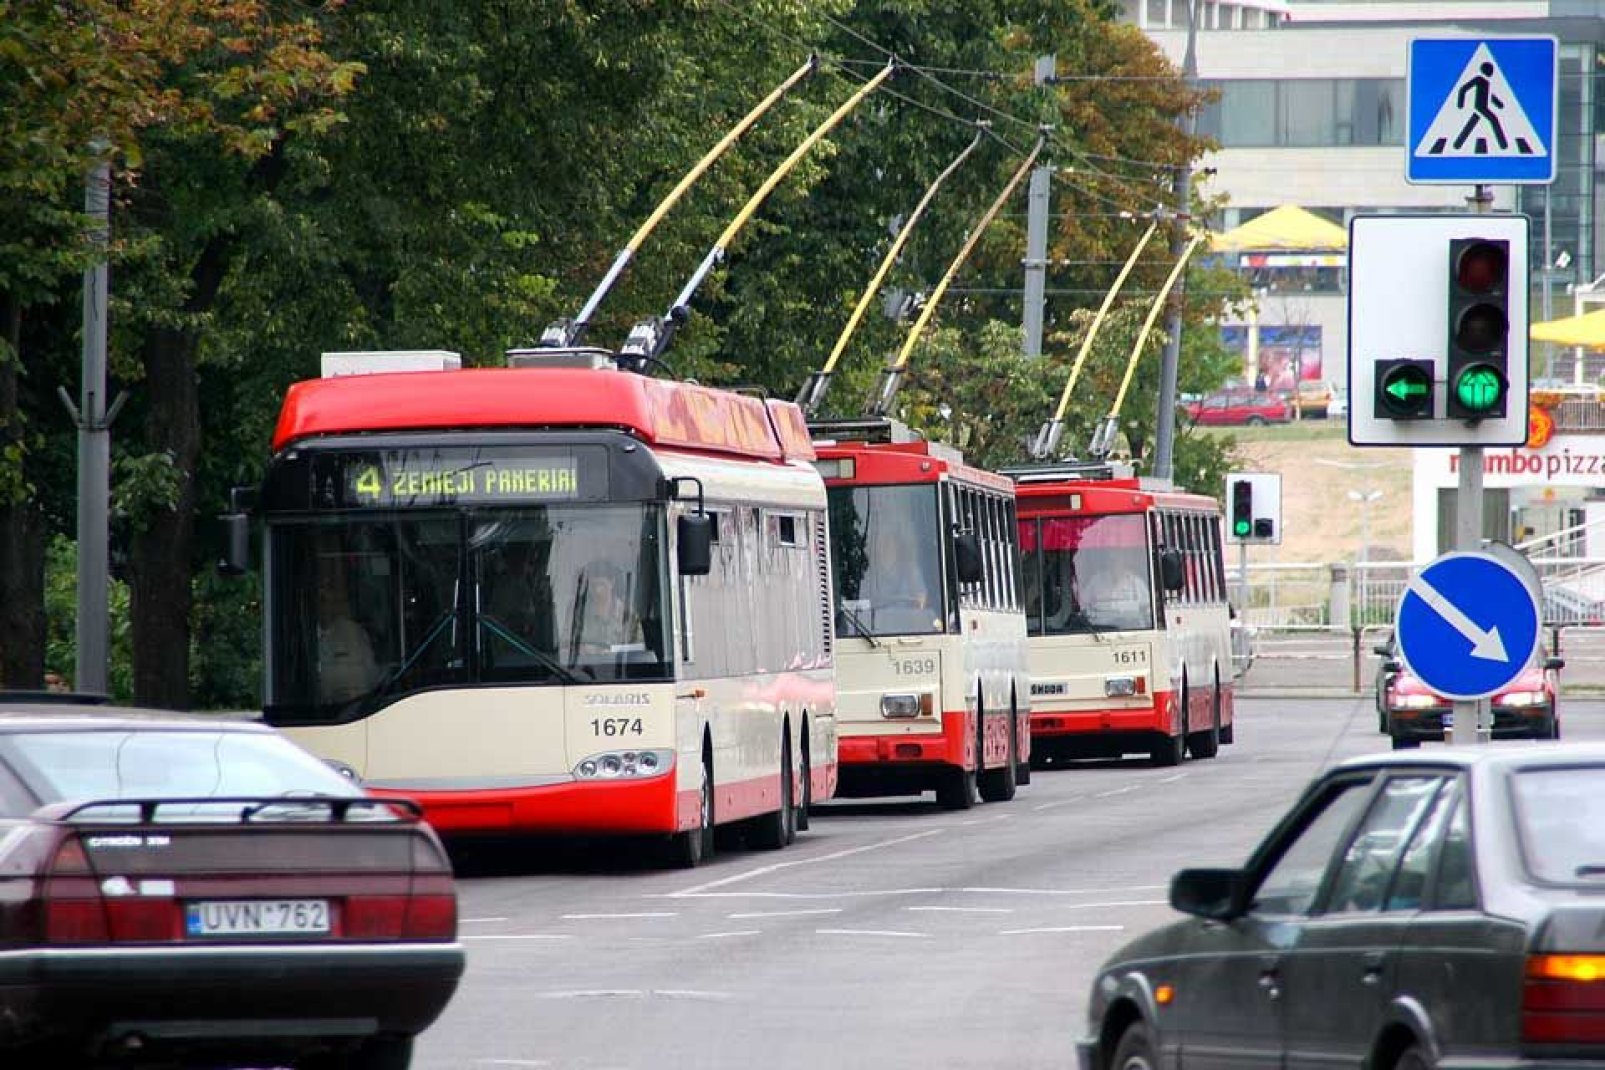 Auch wenn Bus und Straenbahn oft berfllt sind, so bietet Vilnius doch sehr praktische ffentliche Verkehrsverbindungen.